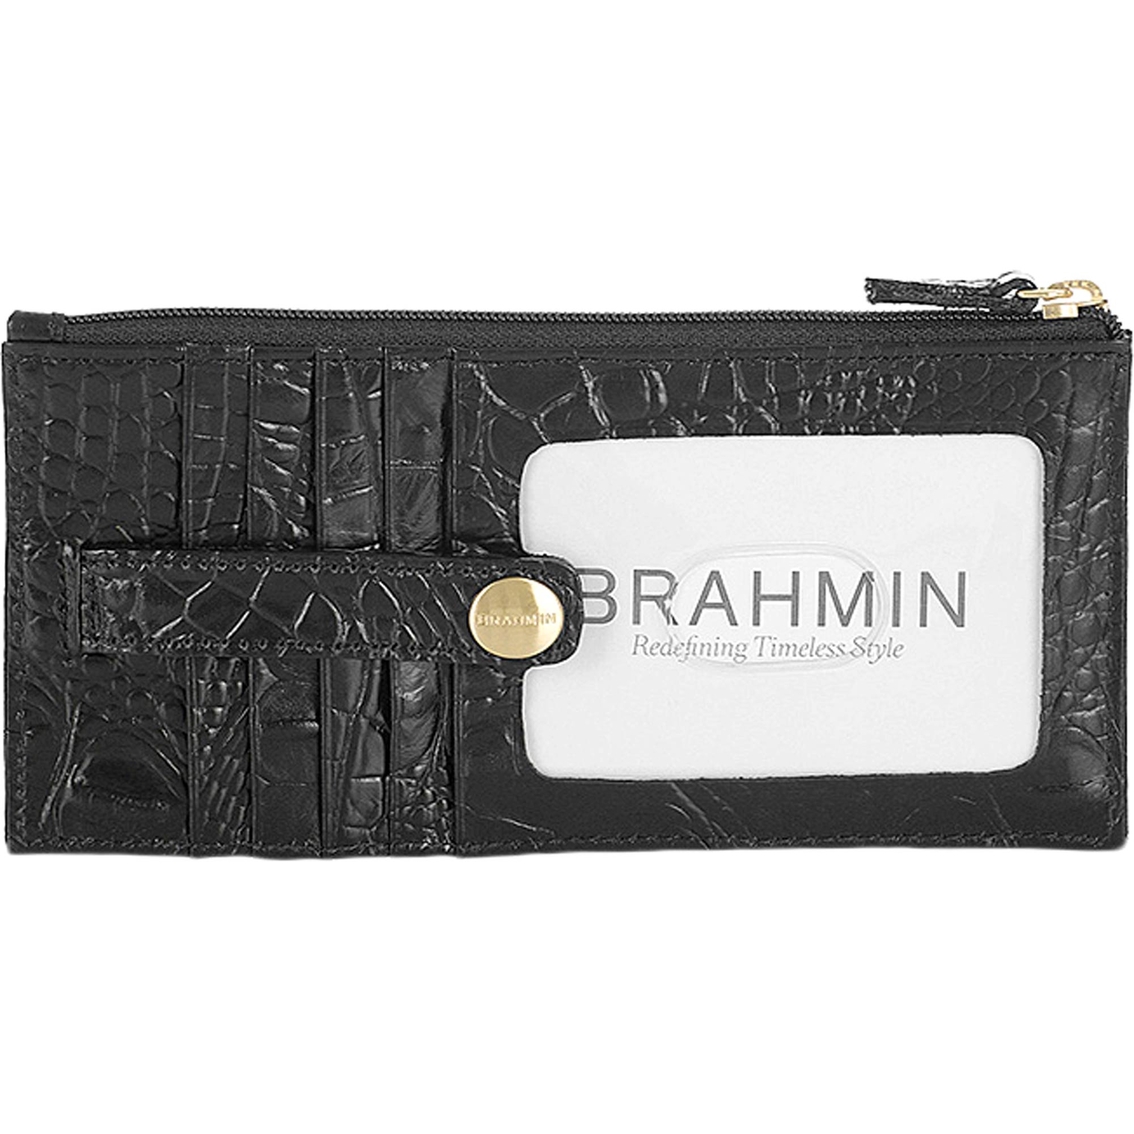 Brahmin Melbourne Credit Card Wallet - Image 2 of 2